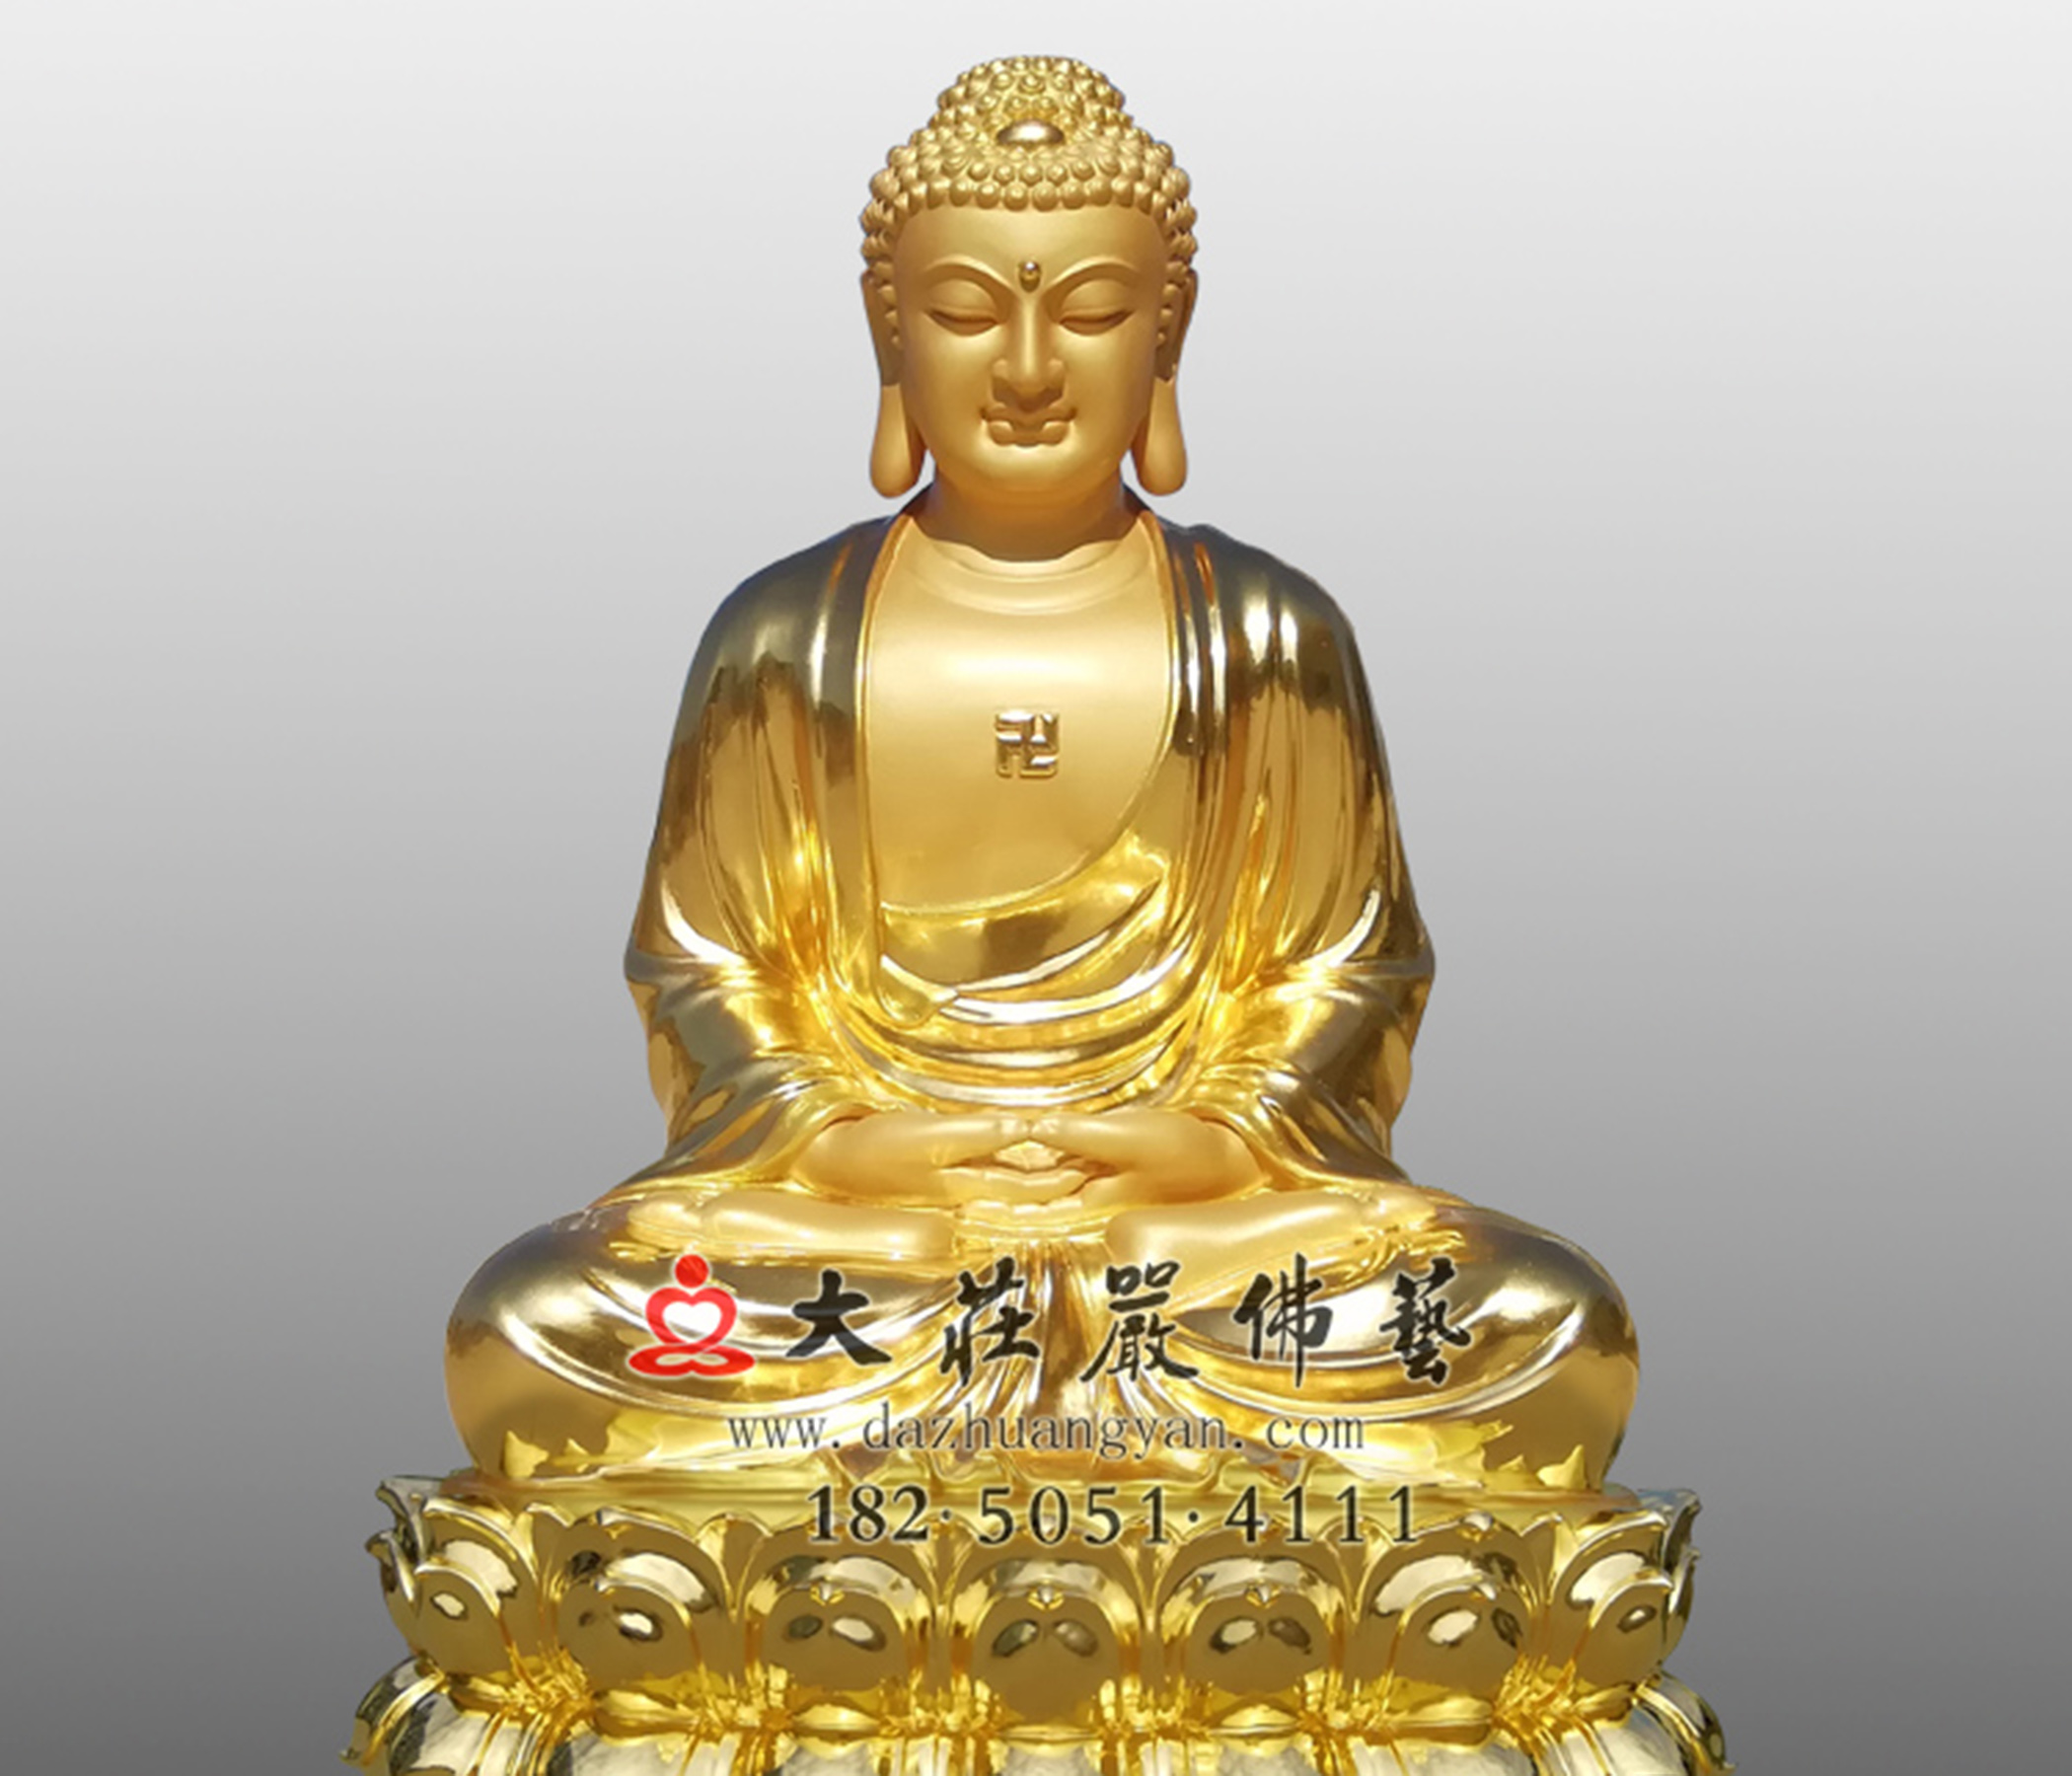 佛陀释迦牟尼佛贴金铜佛像,三宝佛,悉达多太子,佛祖,佛像定制